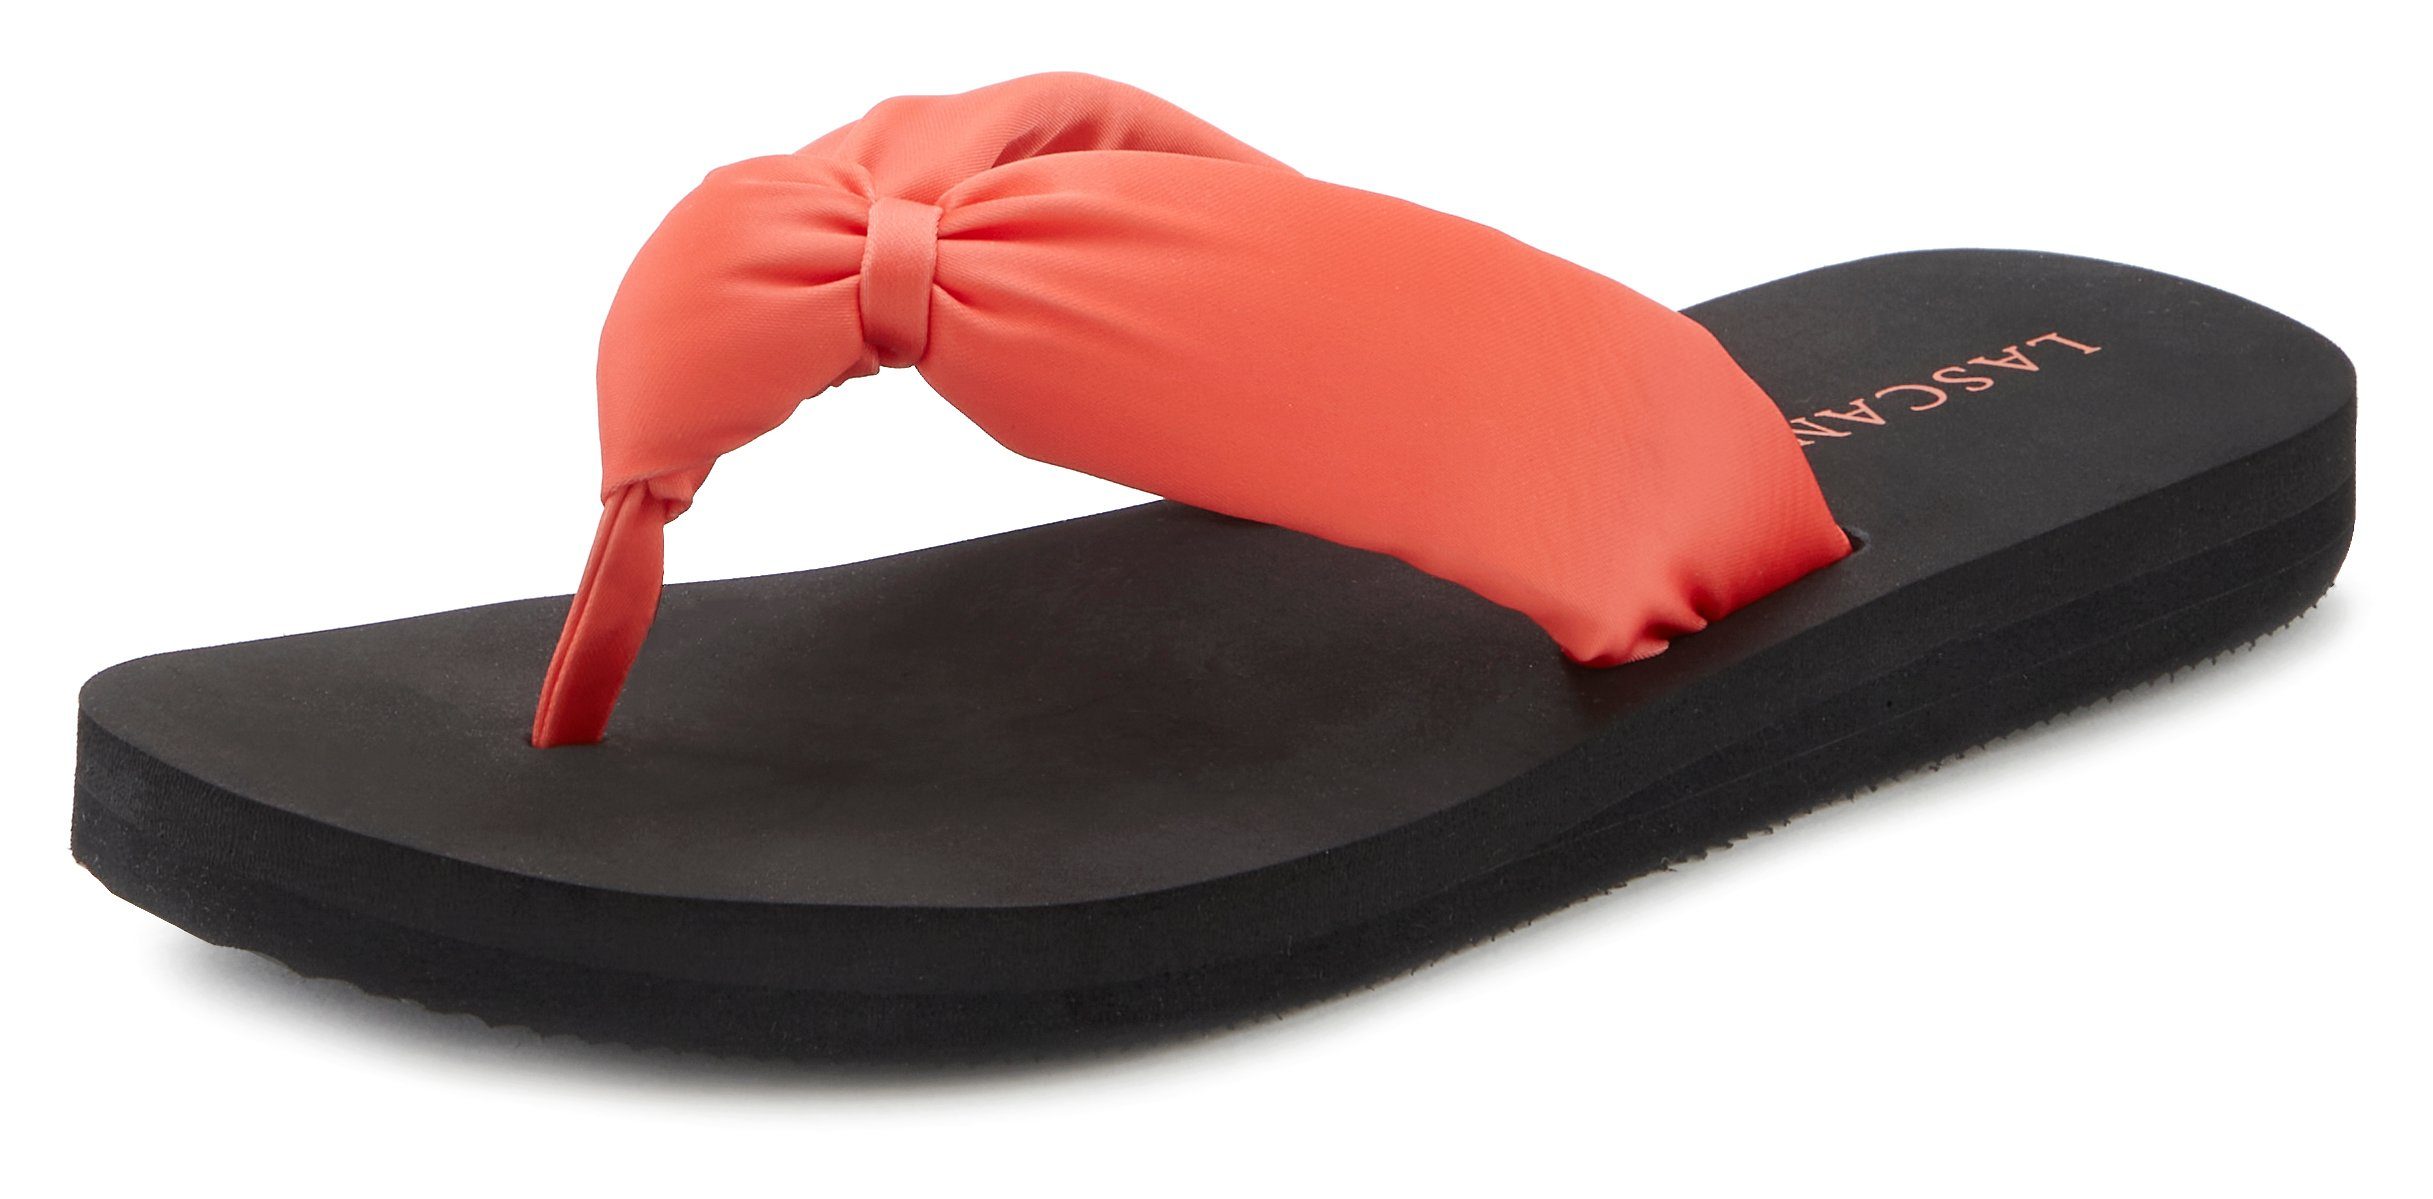 LASCANA Badezehentrenner mit VEGAN orange-schwarz softem Badeschuh Sandale, Band Pantolette, ultraleicht